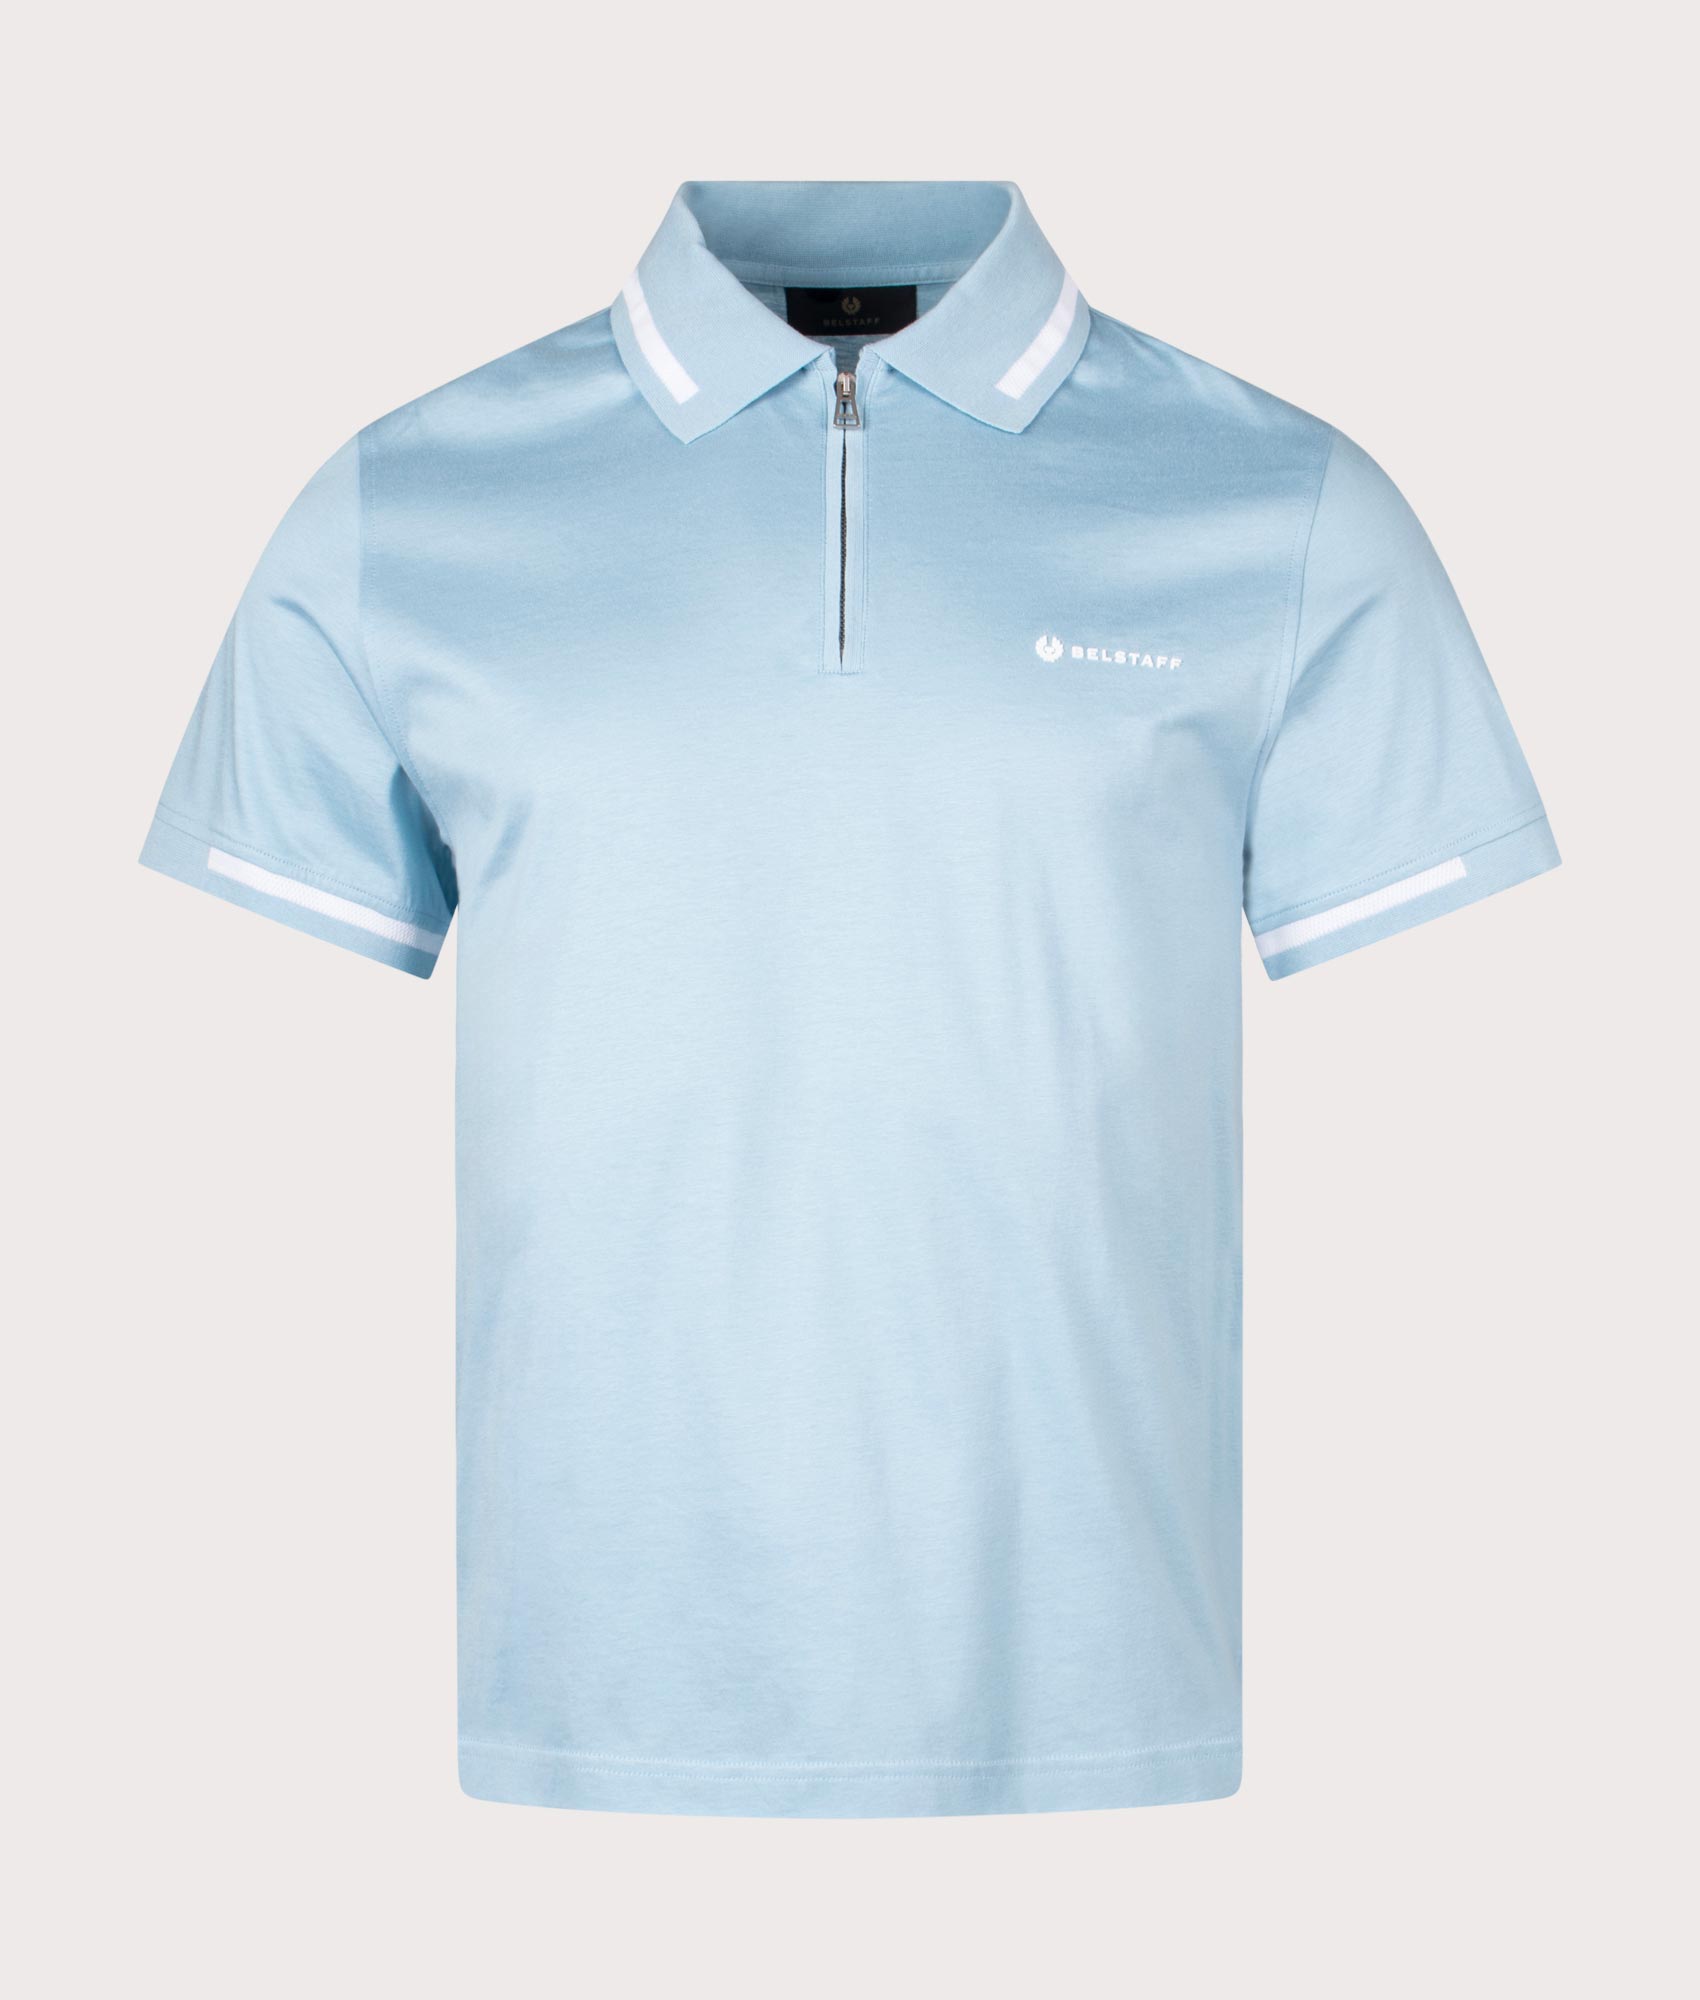 Belstaff Mens Graph Zip Polo Shirt - Colour: Skyline Blue - Size: XXL